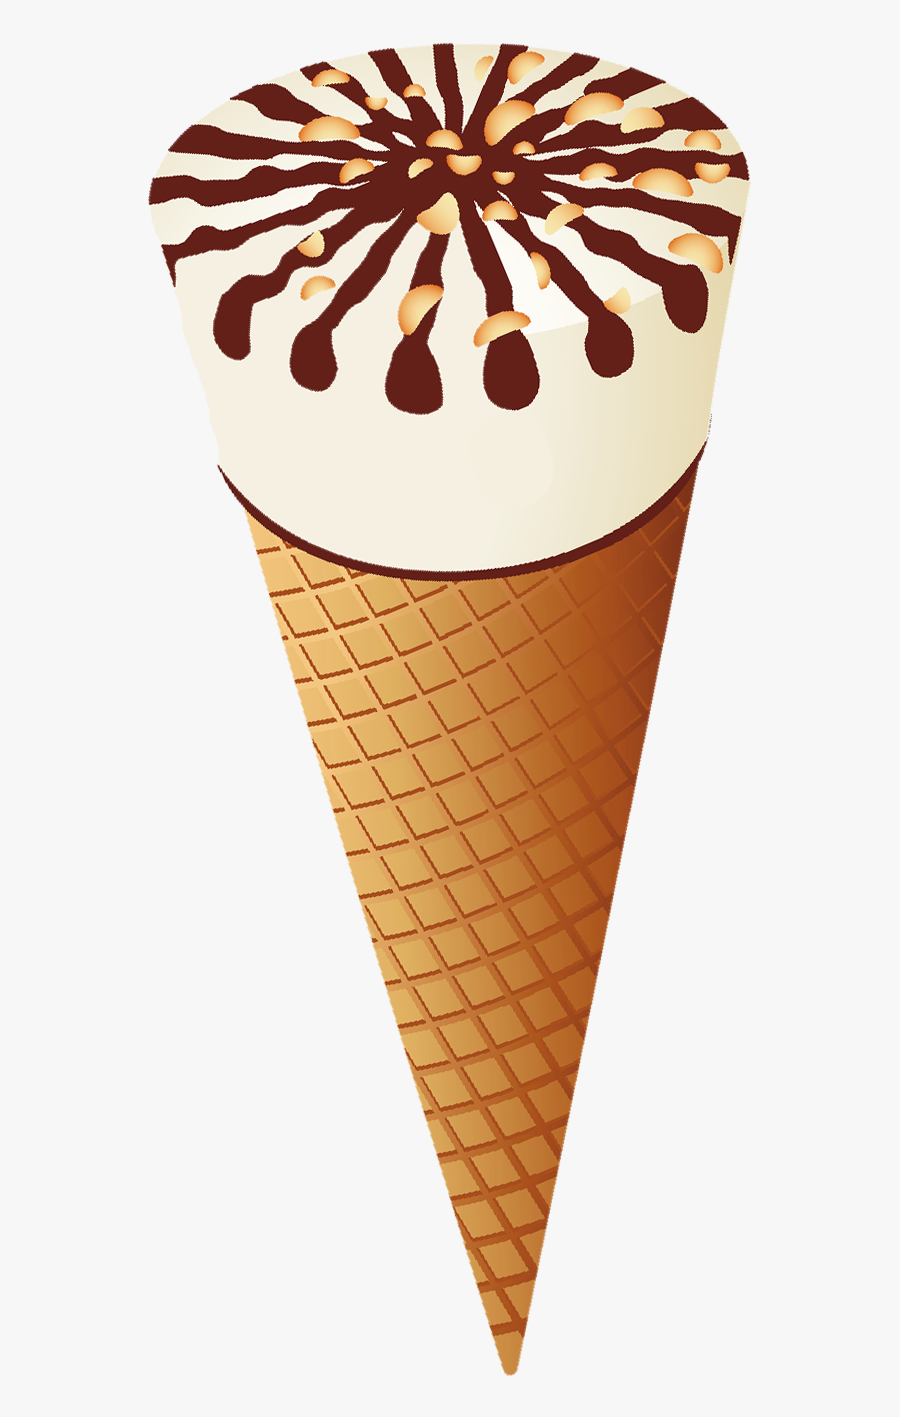 Cone Ice Cream Png, Transparent Clipart